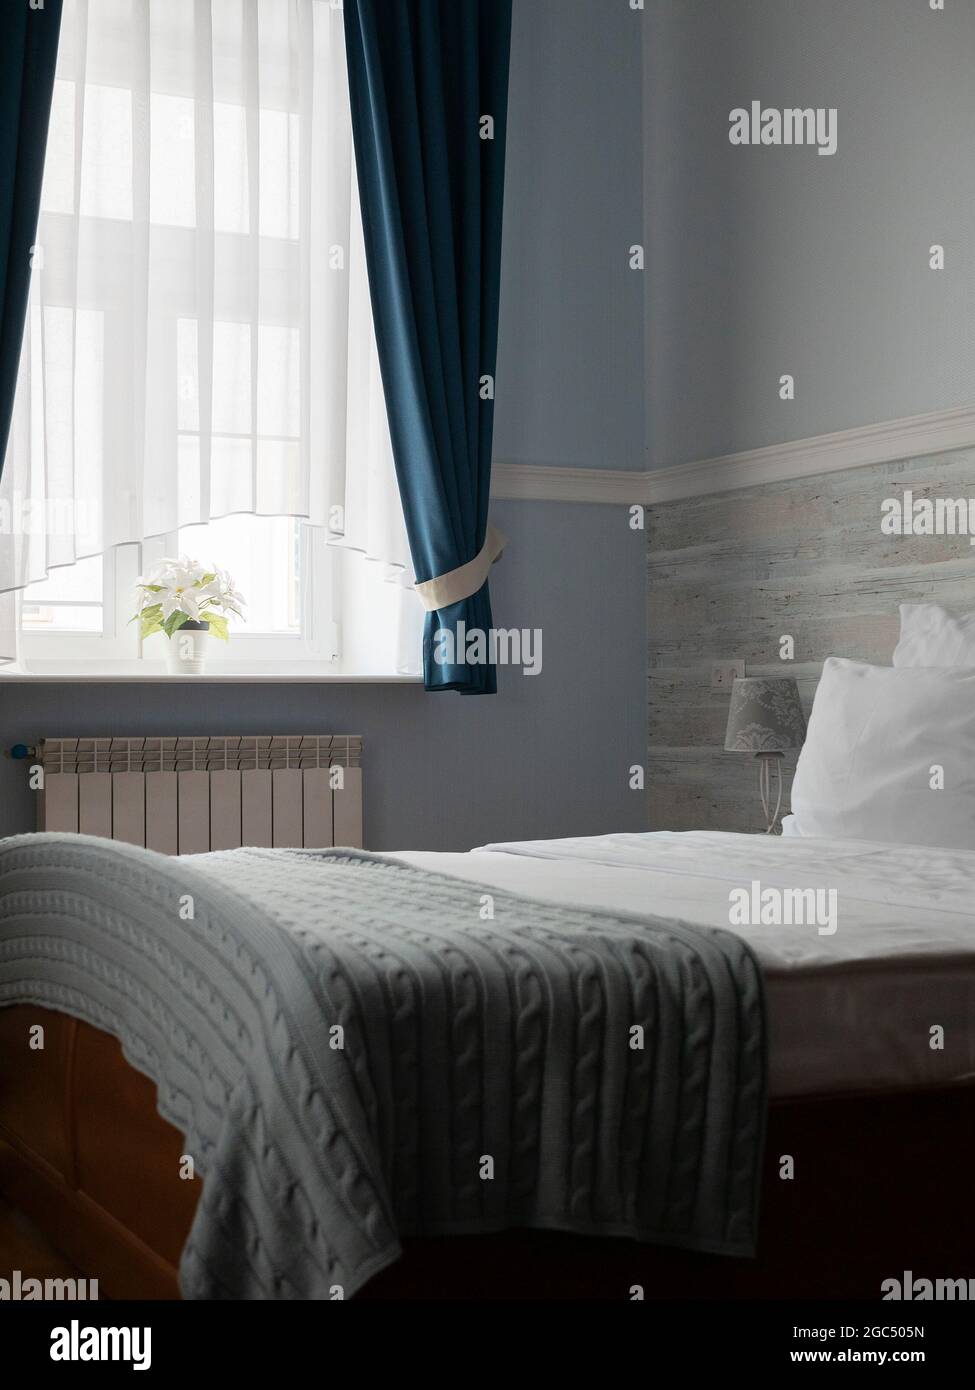 Bett mit weißen Kissen und blauen karierten Decken. Wunderschönes und gemütliches Hotelzimmer. Haus- oder Hotelschlafzimmer Stockfoto